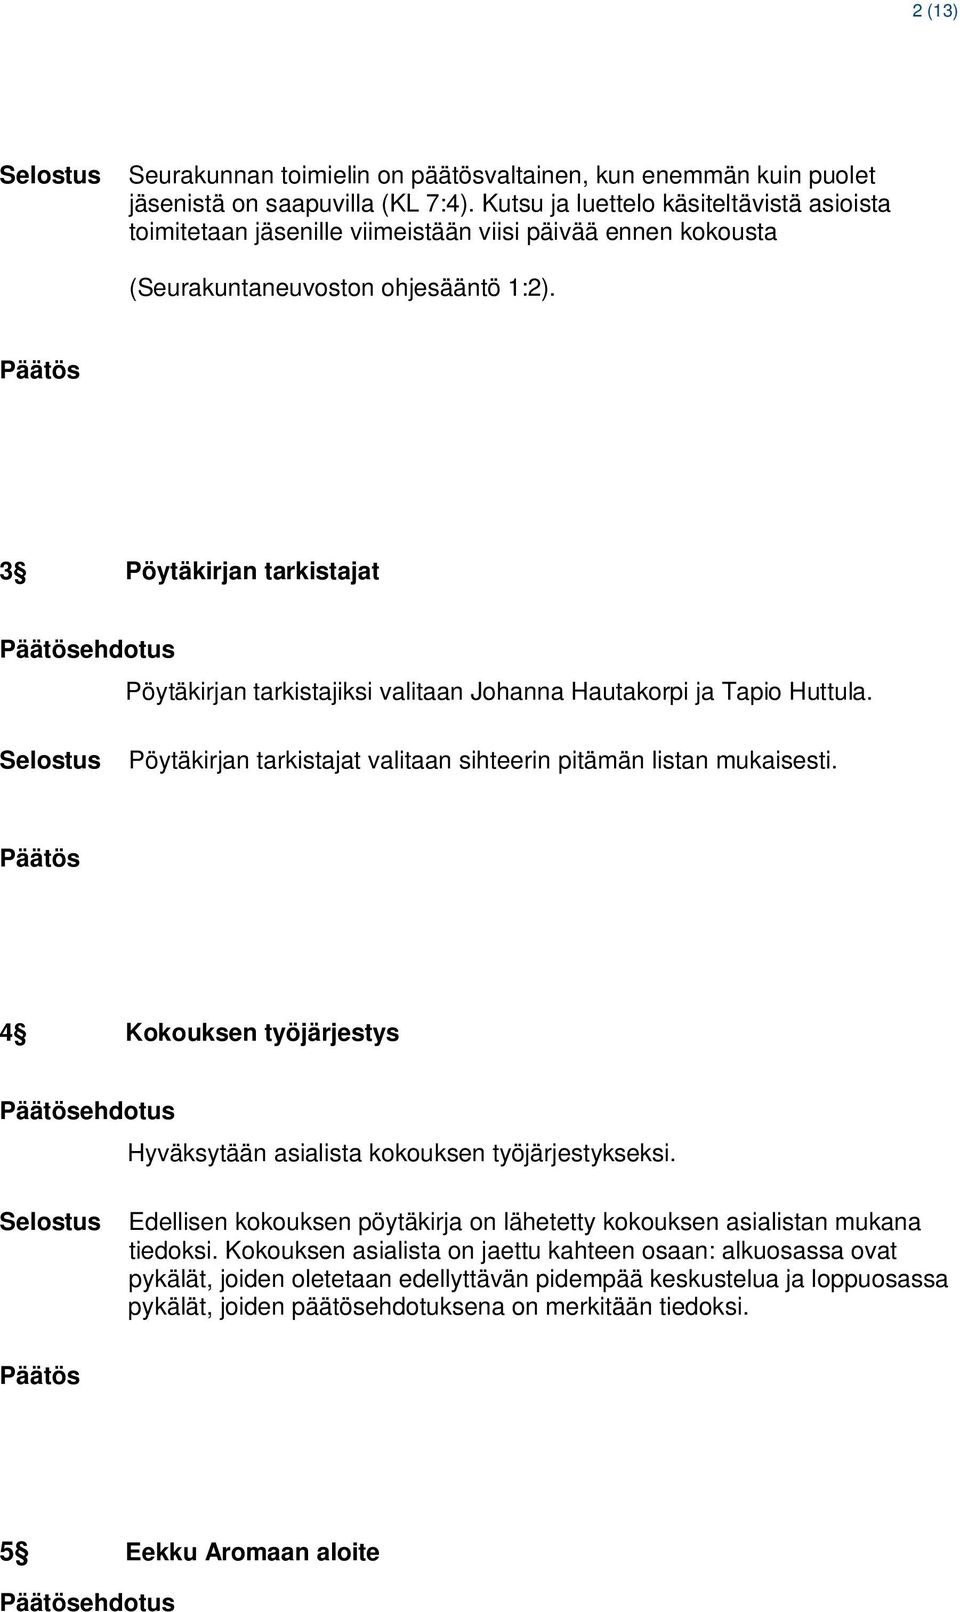 3 Pöytäkirjan tarkistajat ehdotus Pöytäkirjan tarkistajiksi valitaan Johanna Hautakorpi ja Tapio Huttula. Pöytäkirjan tarkistajat valitaan sihteerin pitämän listan mukaisesti.